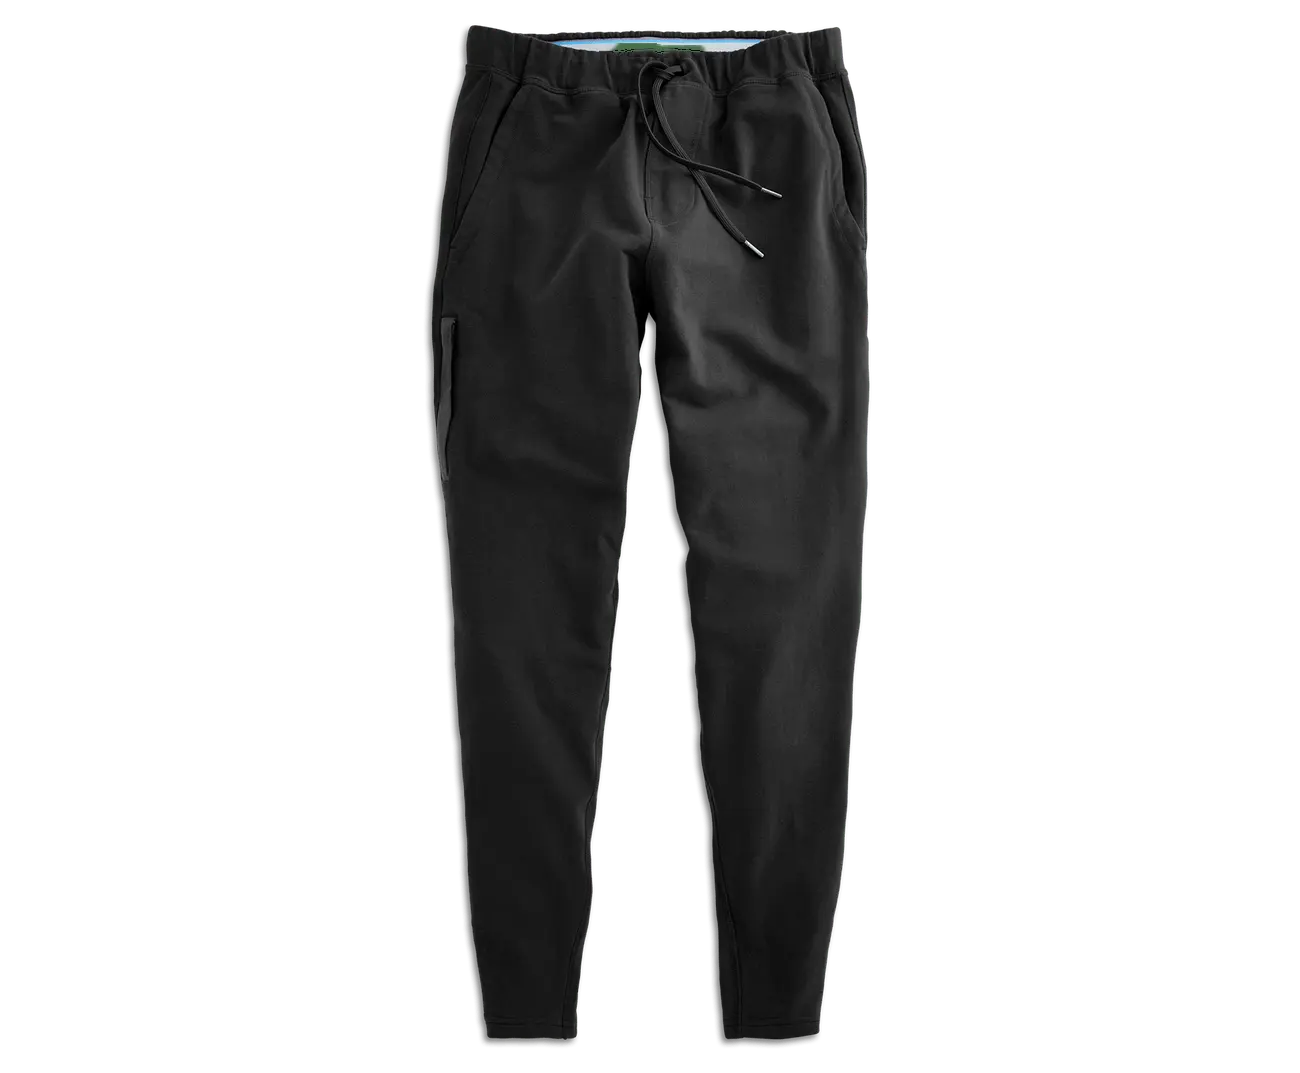 उच्च गुणवत्ता वाले ट्रैक पैंट ड्रॉस्ट्रिंग स्पोर्ट पैंट लूज कैजुअल आउटडोर स्वेटपैंट जिम फिटनेस जॉगर ट्राउजर पुरुष स्पोर्ट्स पैंट